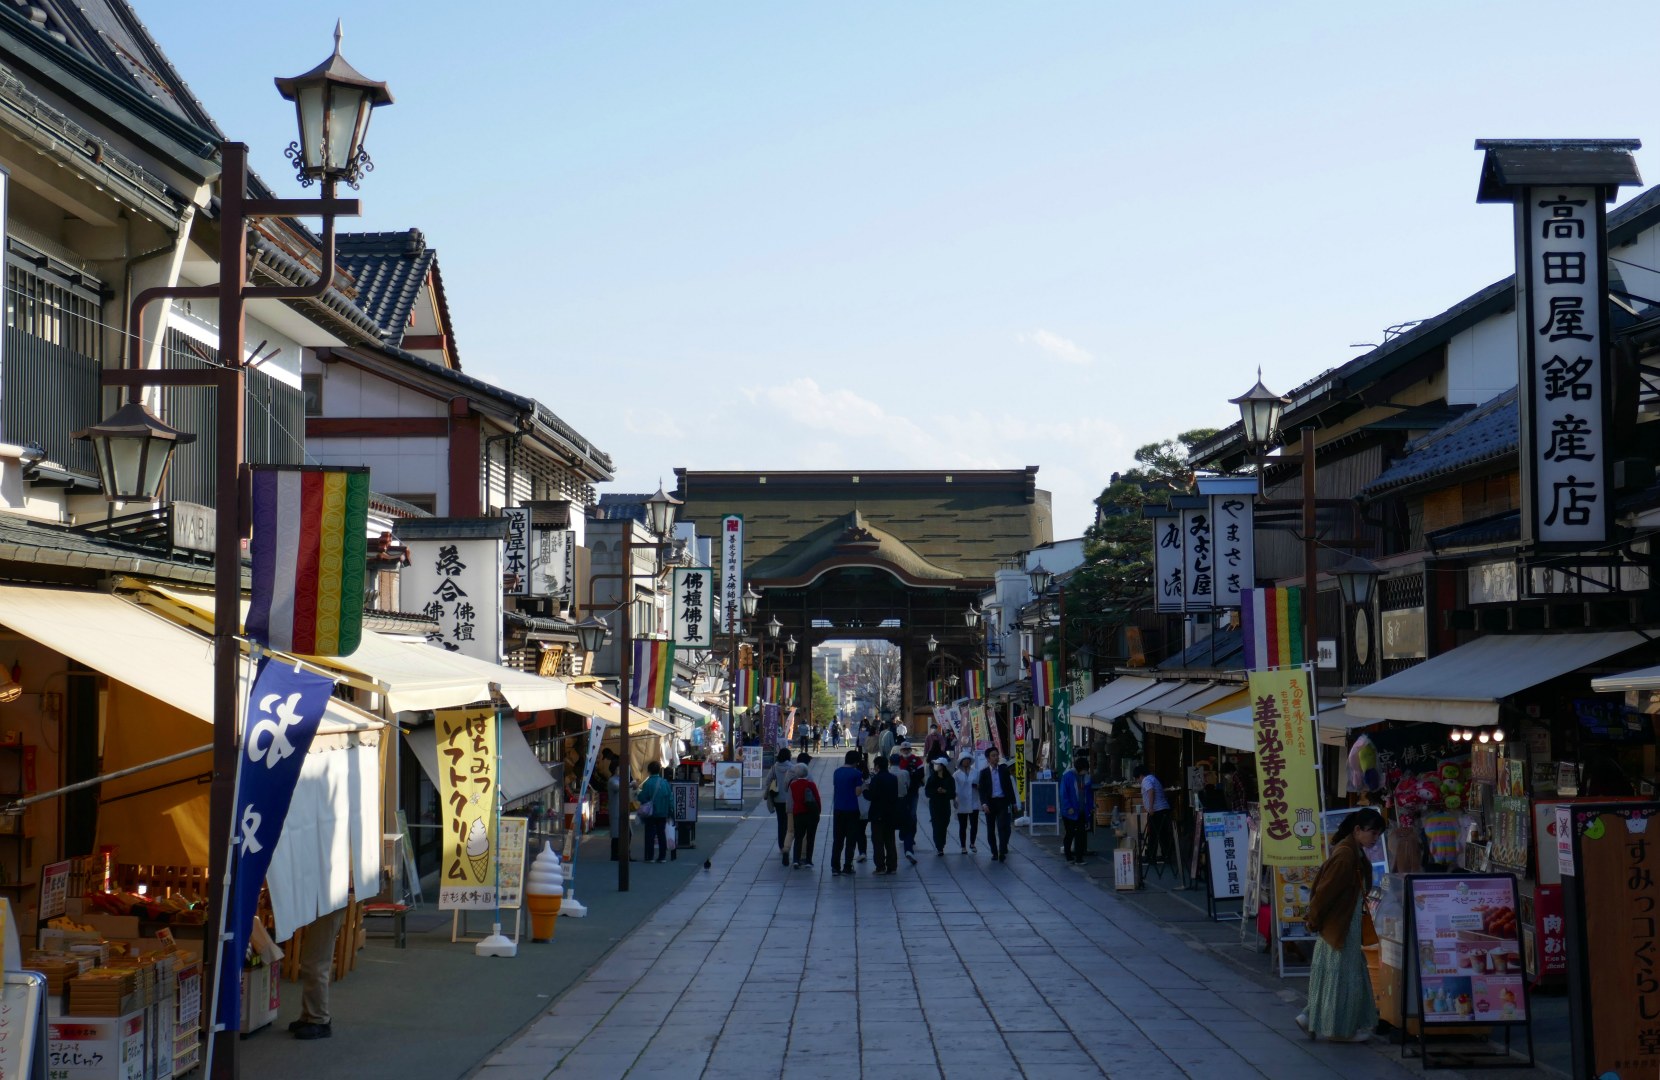 Zenkoji Nakamise Street, Nagano